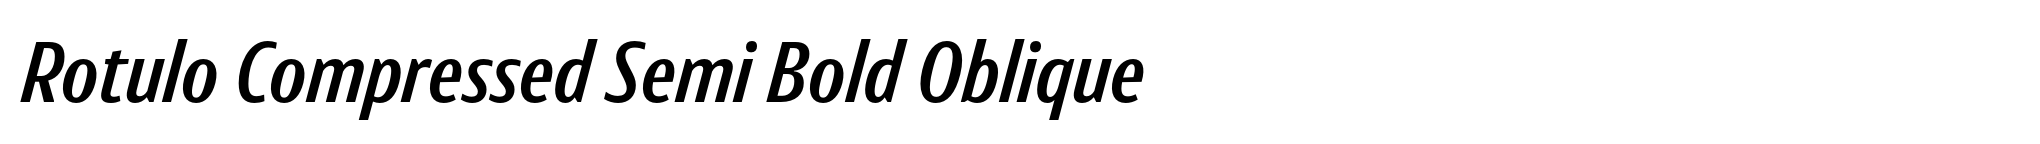 Rotulo Compressed Semi Bold Oblique image